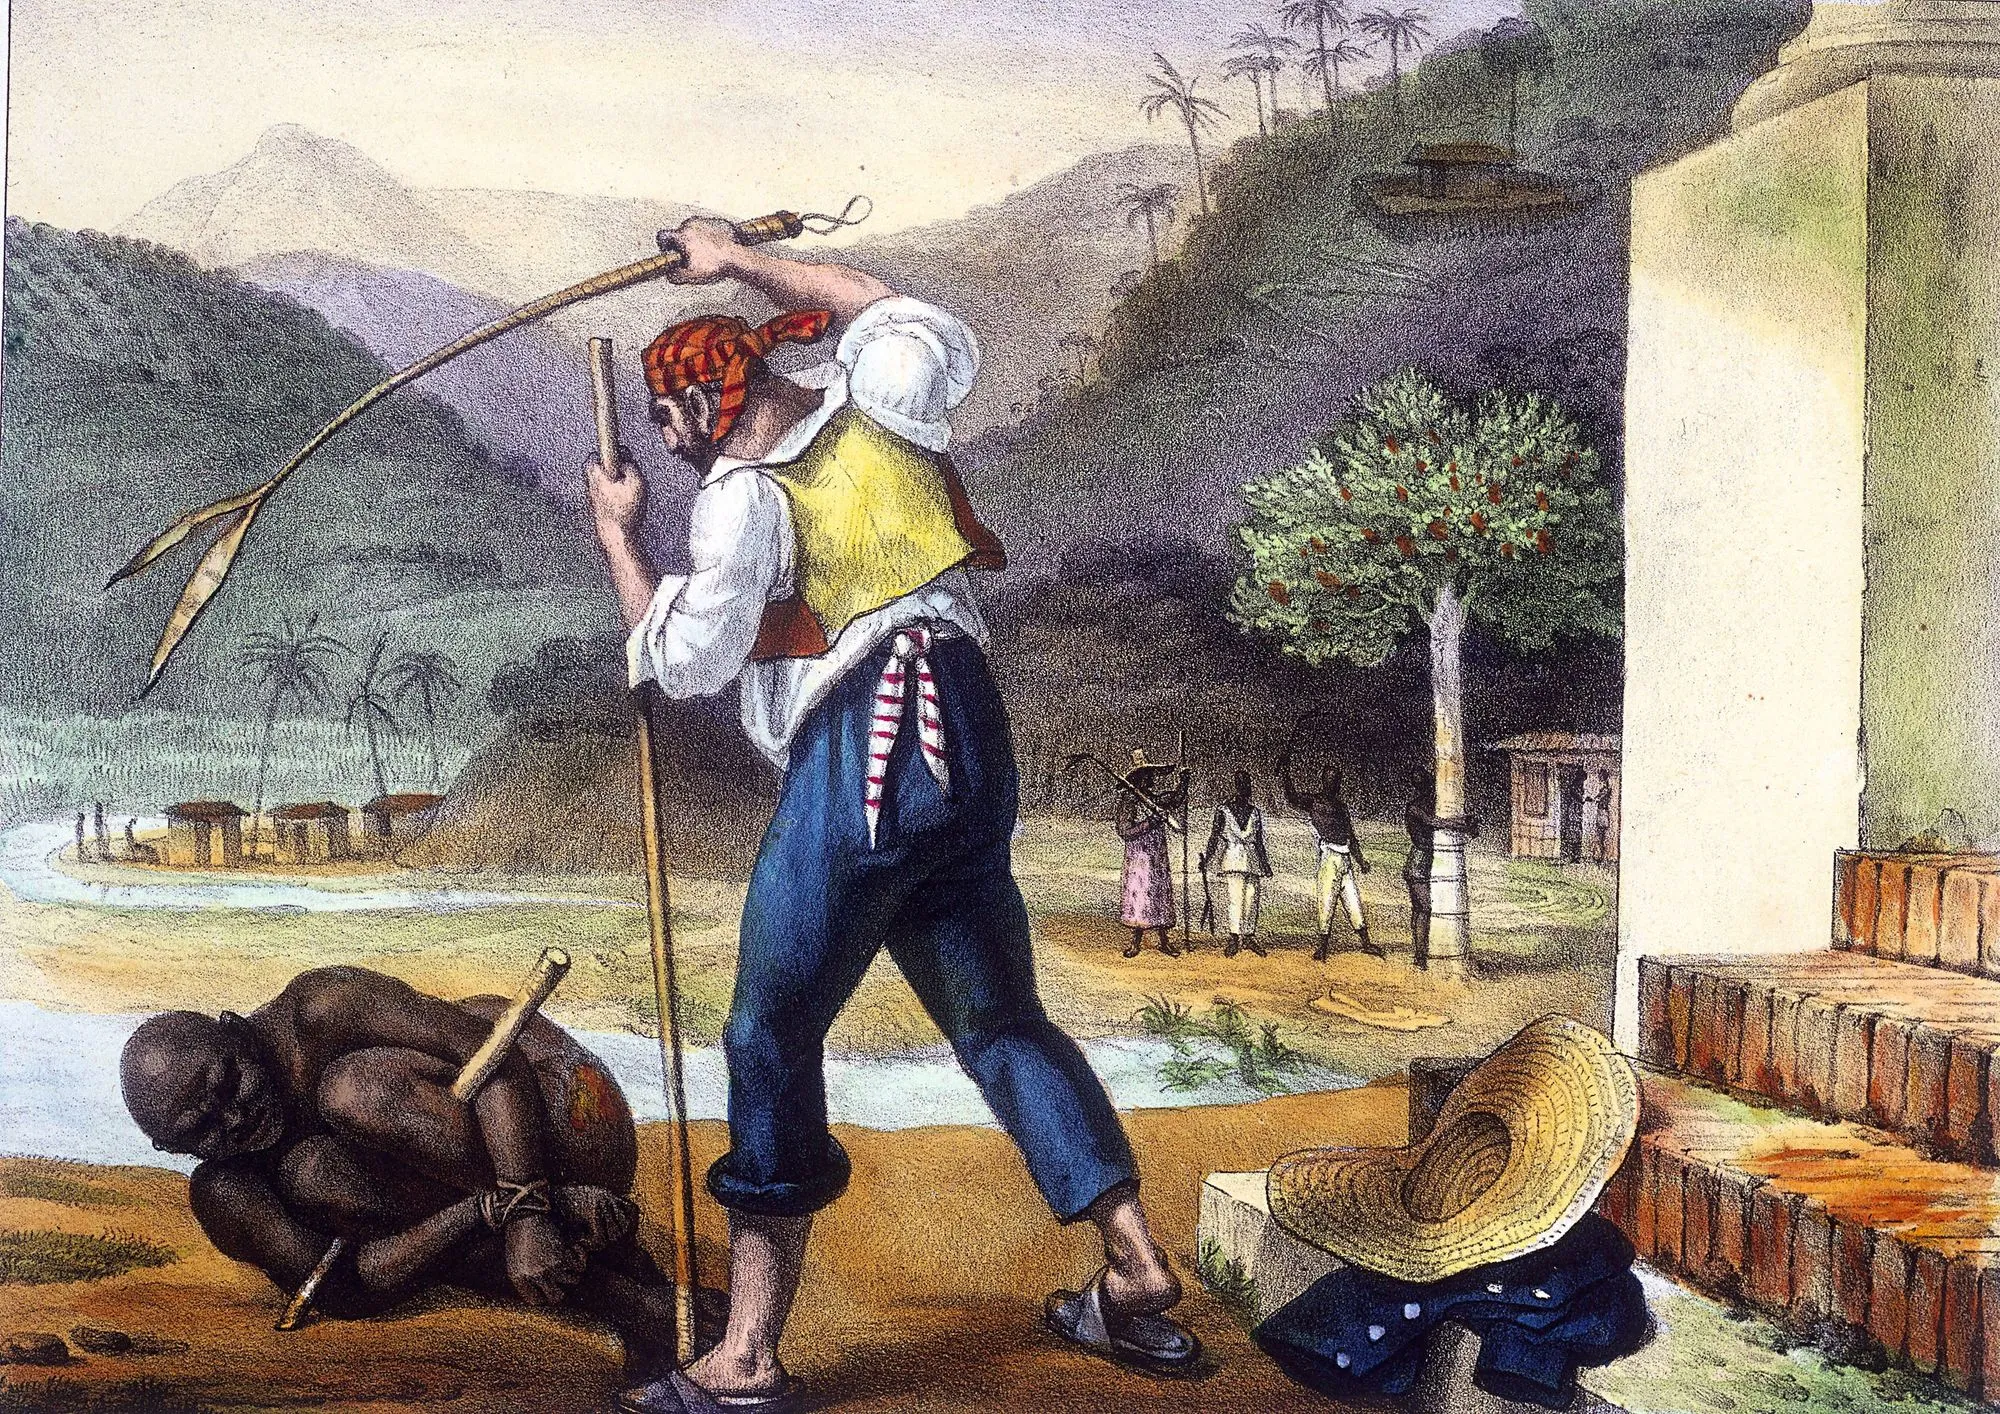 Feitors corrigeant des nègres, lithographie coloriée, d'après Jean-Baptiste Debret, Voyage pittoresque et historique au Brésil, 1834 - 39.